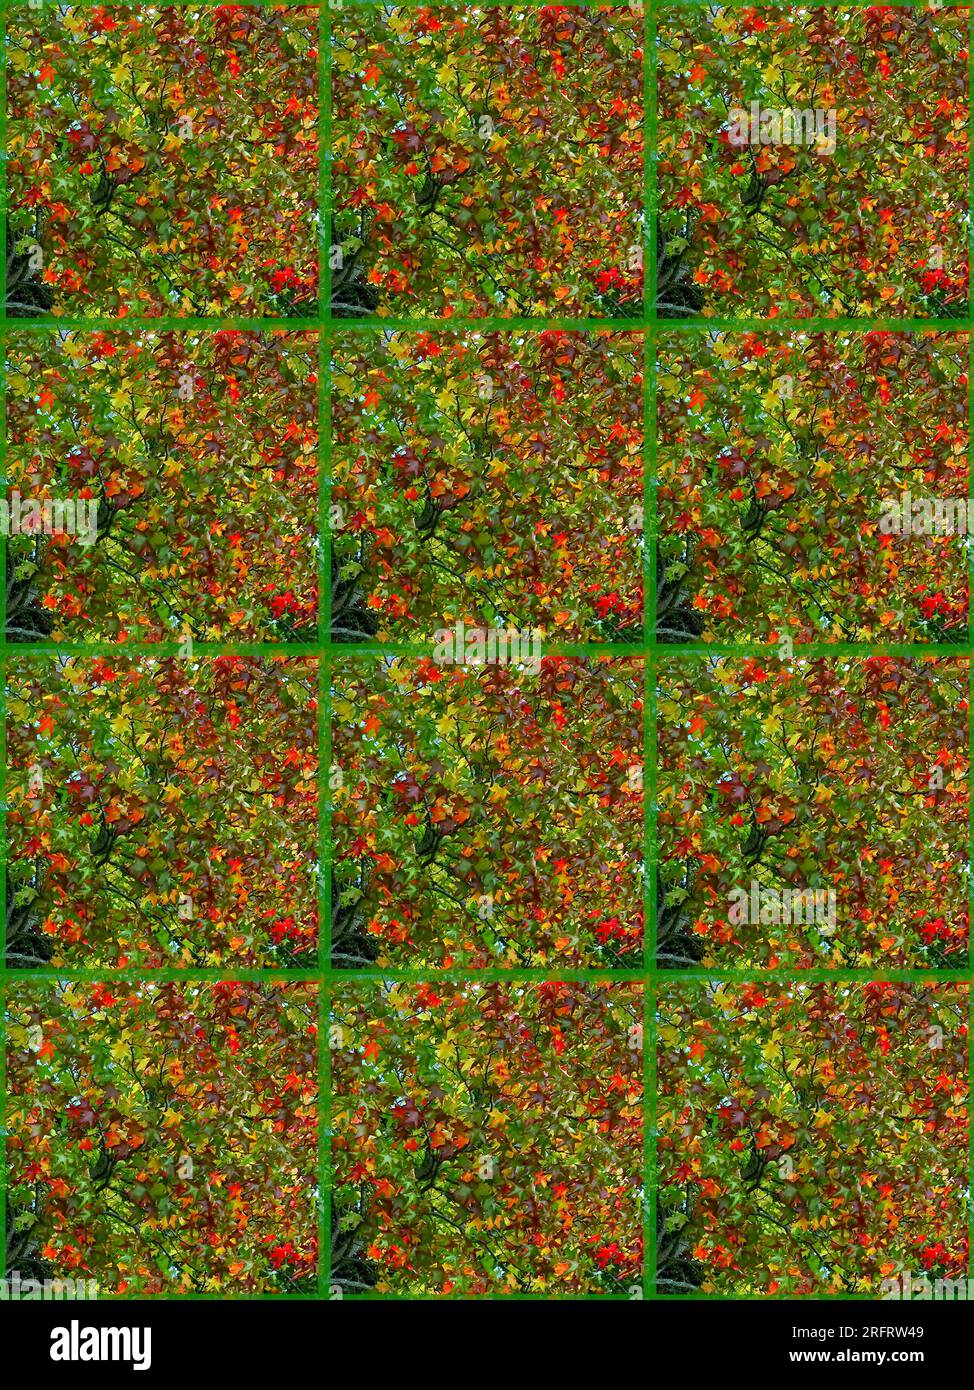 Toile de fond : rouge, vert, jaune, brun, feuilles d'érable. Fond feuillu vertical. Conception sous forme de panneaux. Banque D'Images